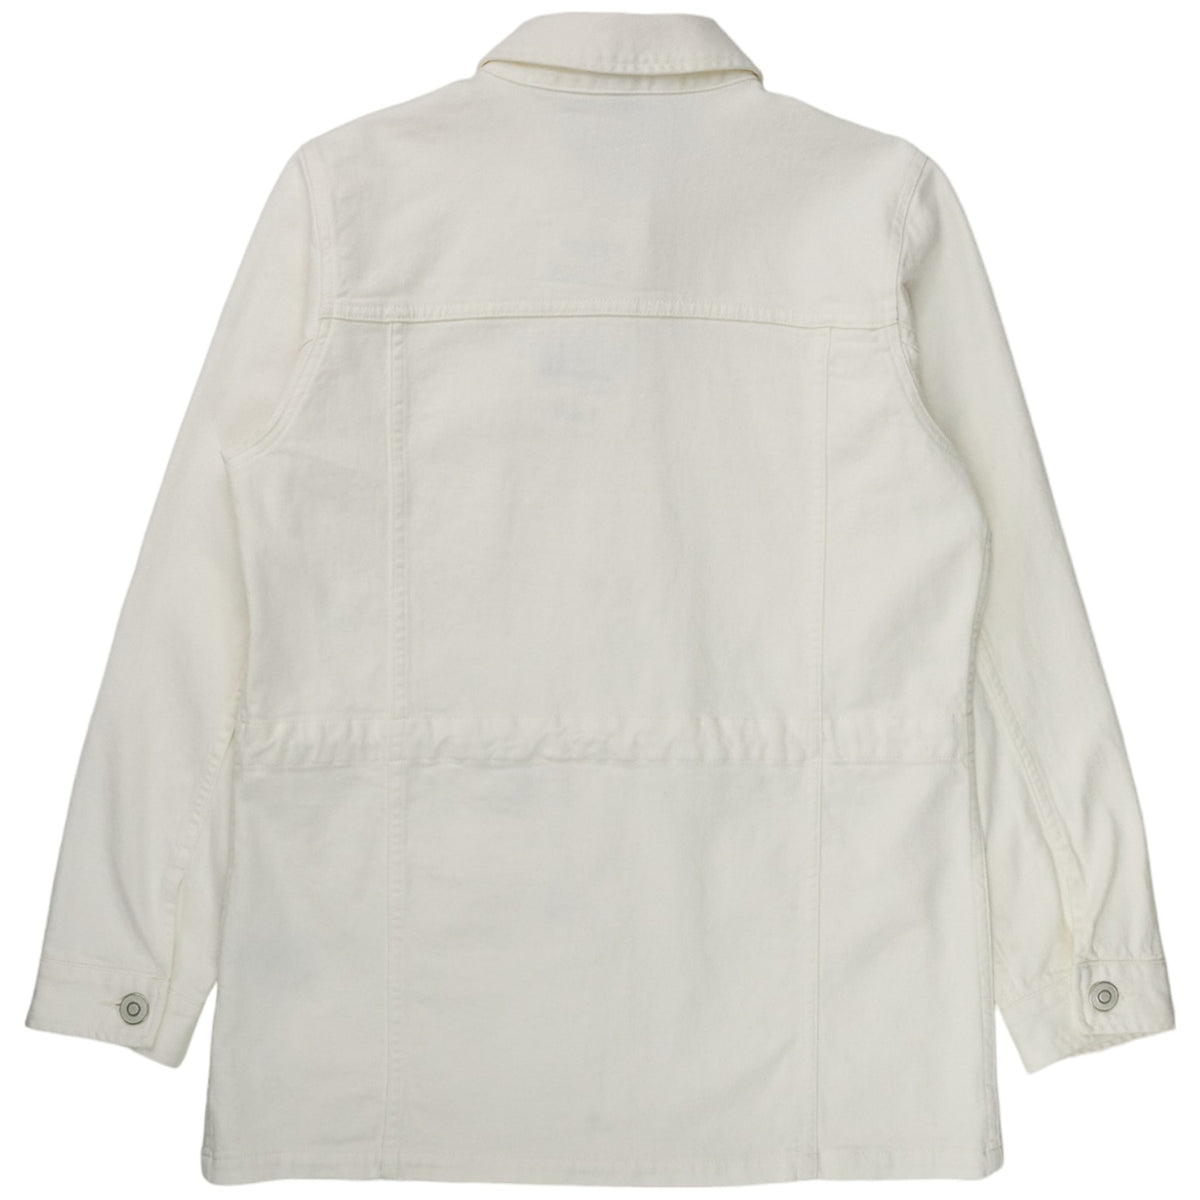 Baukjen White Jayden Organic Jacket